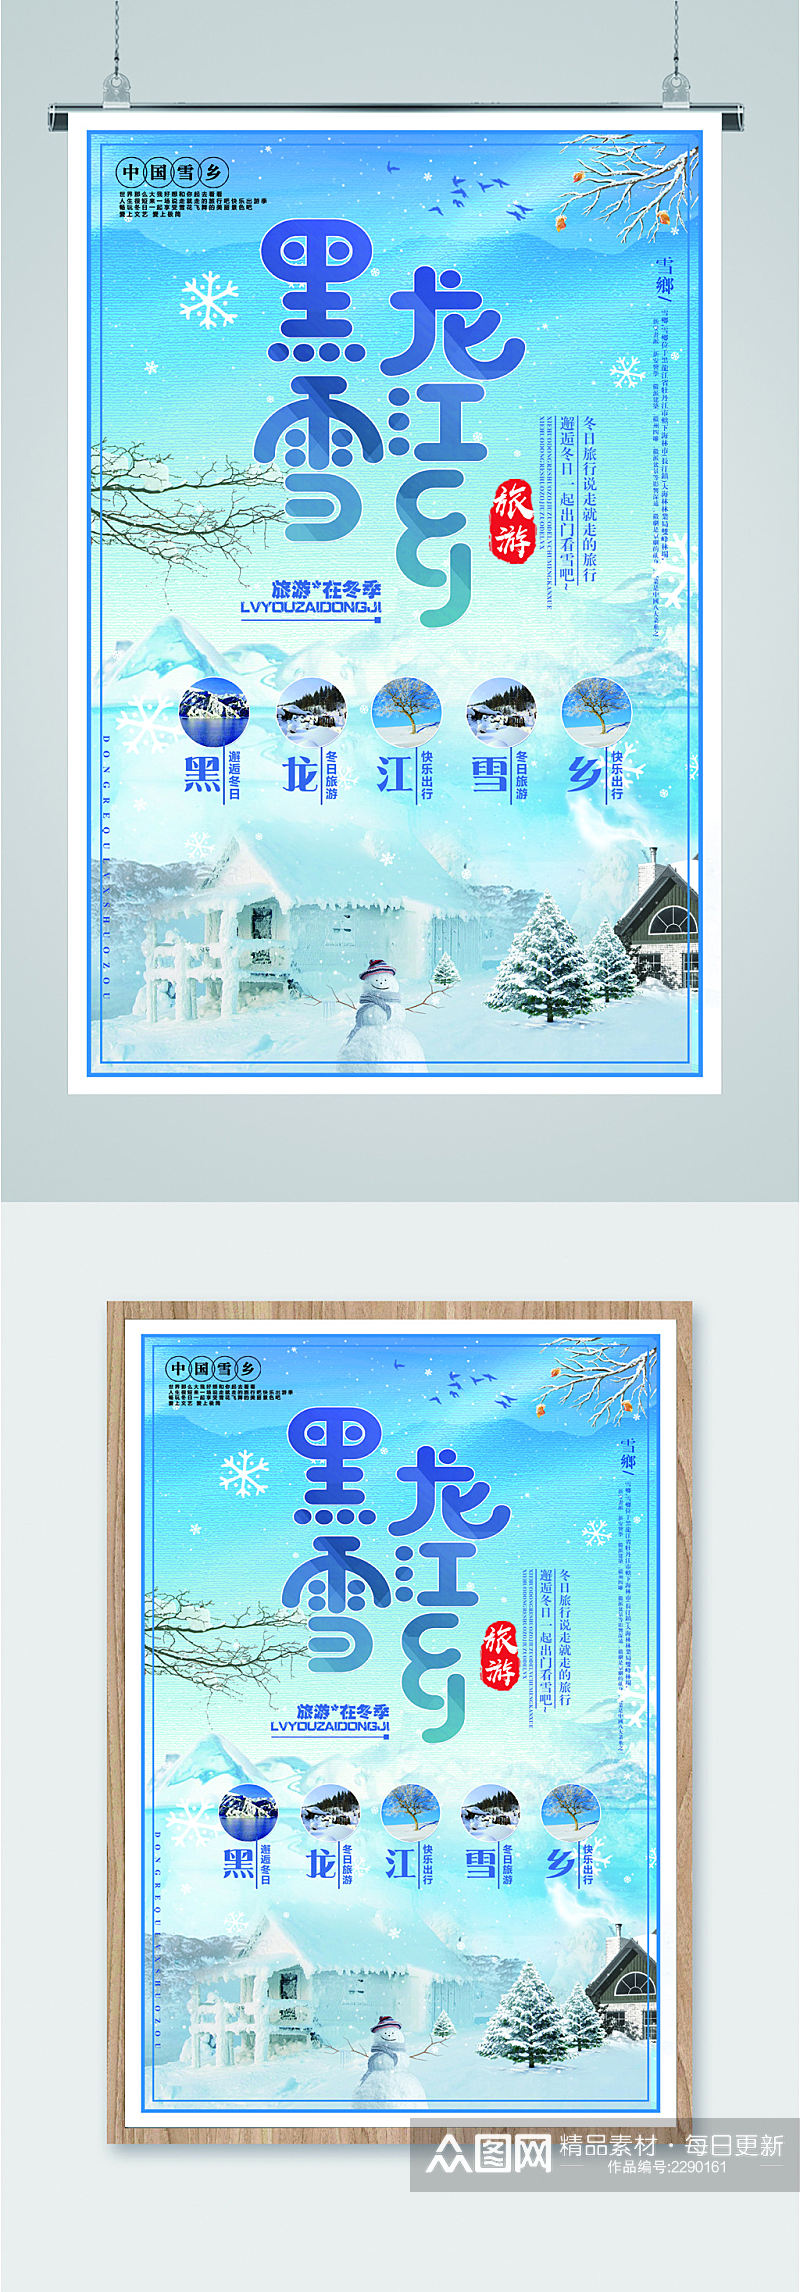 黑龙江雪乡旅游海报素材